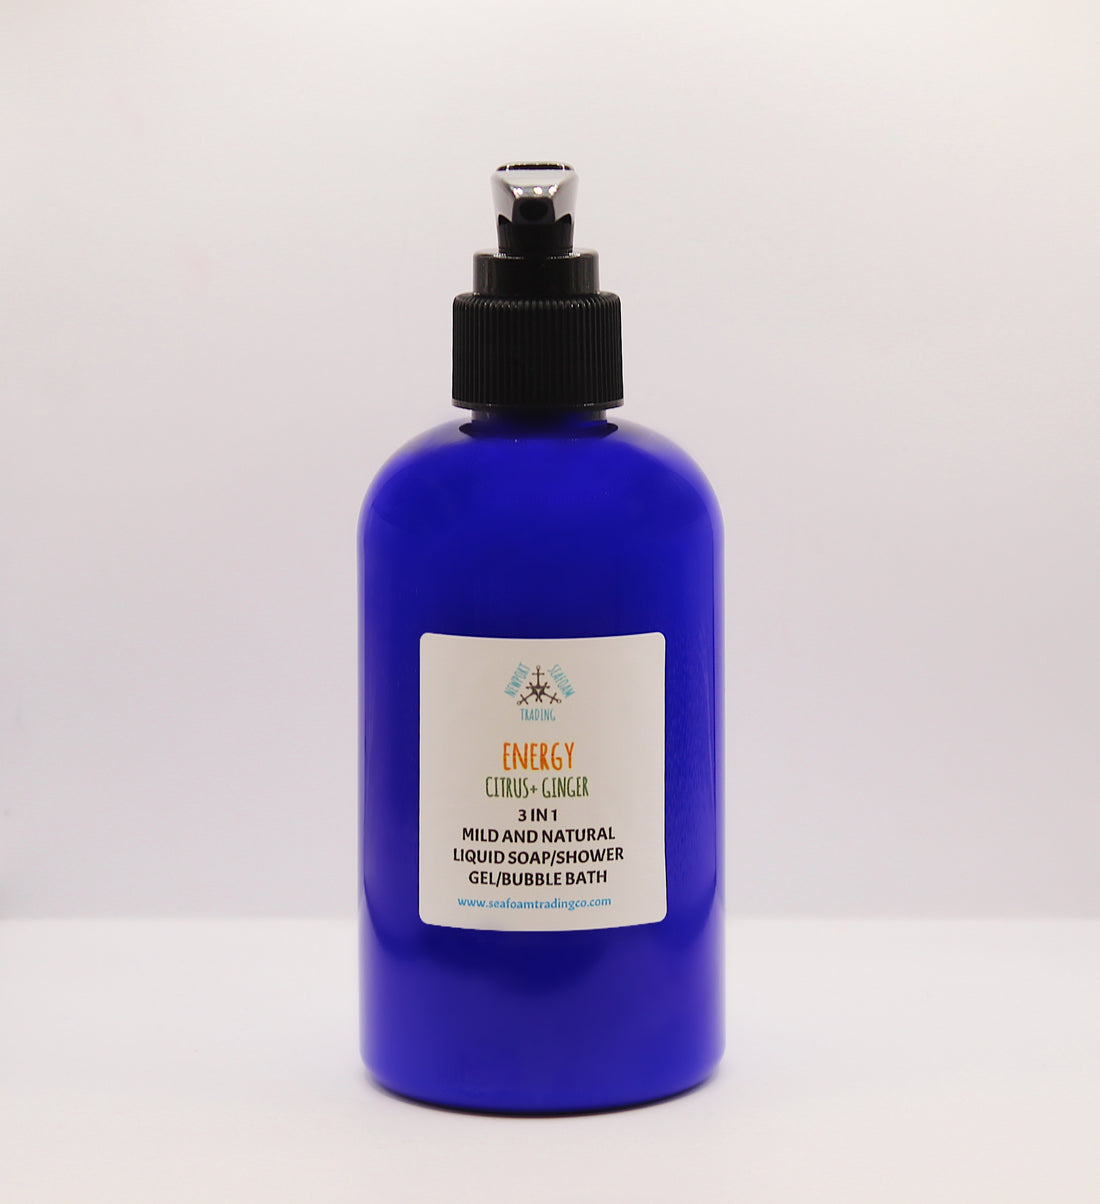 Energy - Citrus Ginger Organic Liquid Soap